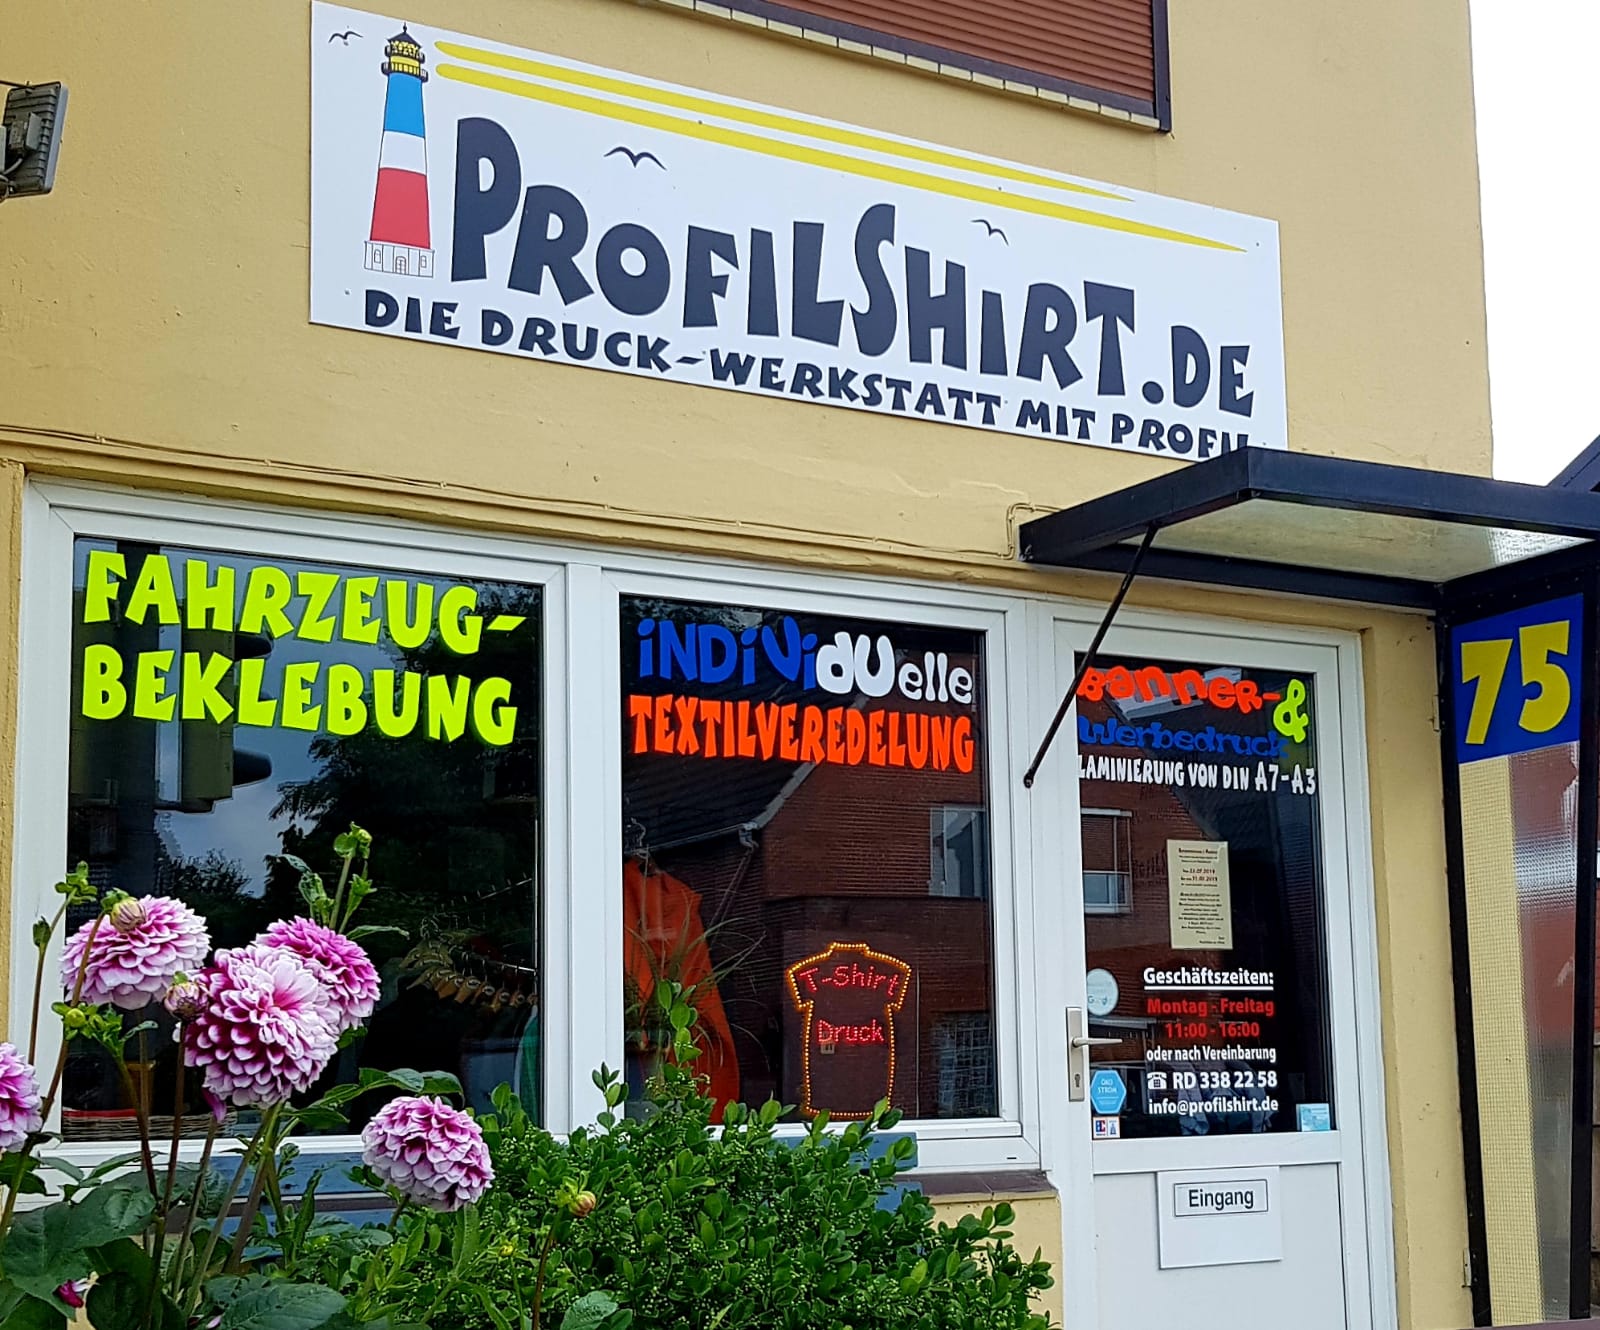 Bild 8 Profilshirt.de in Rendsburg